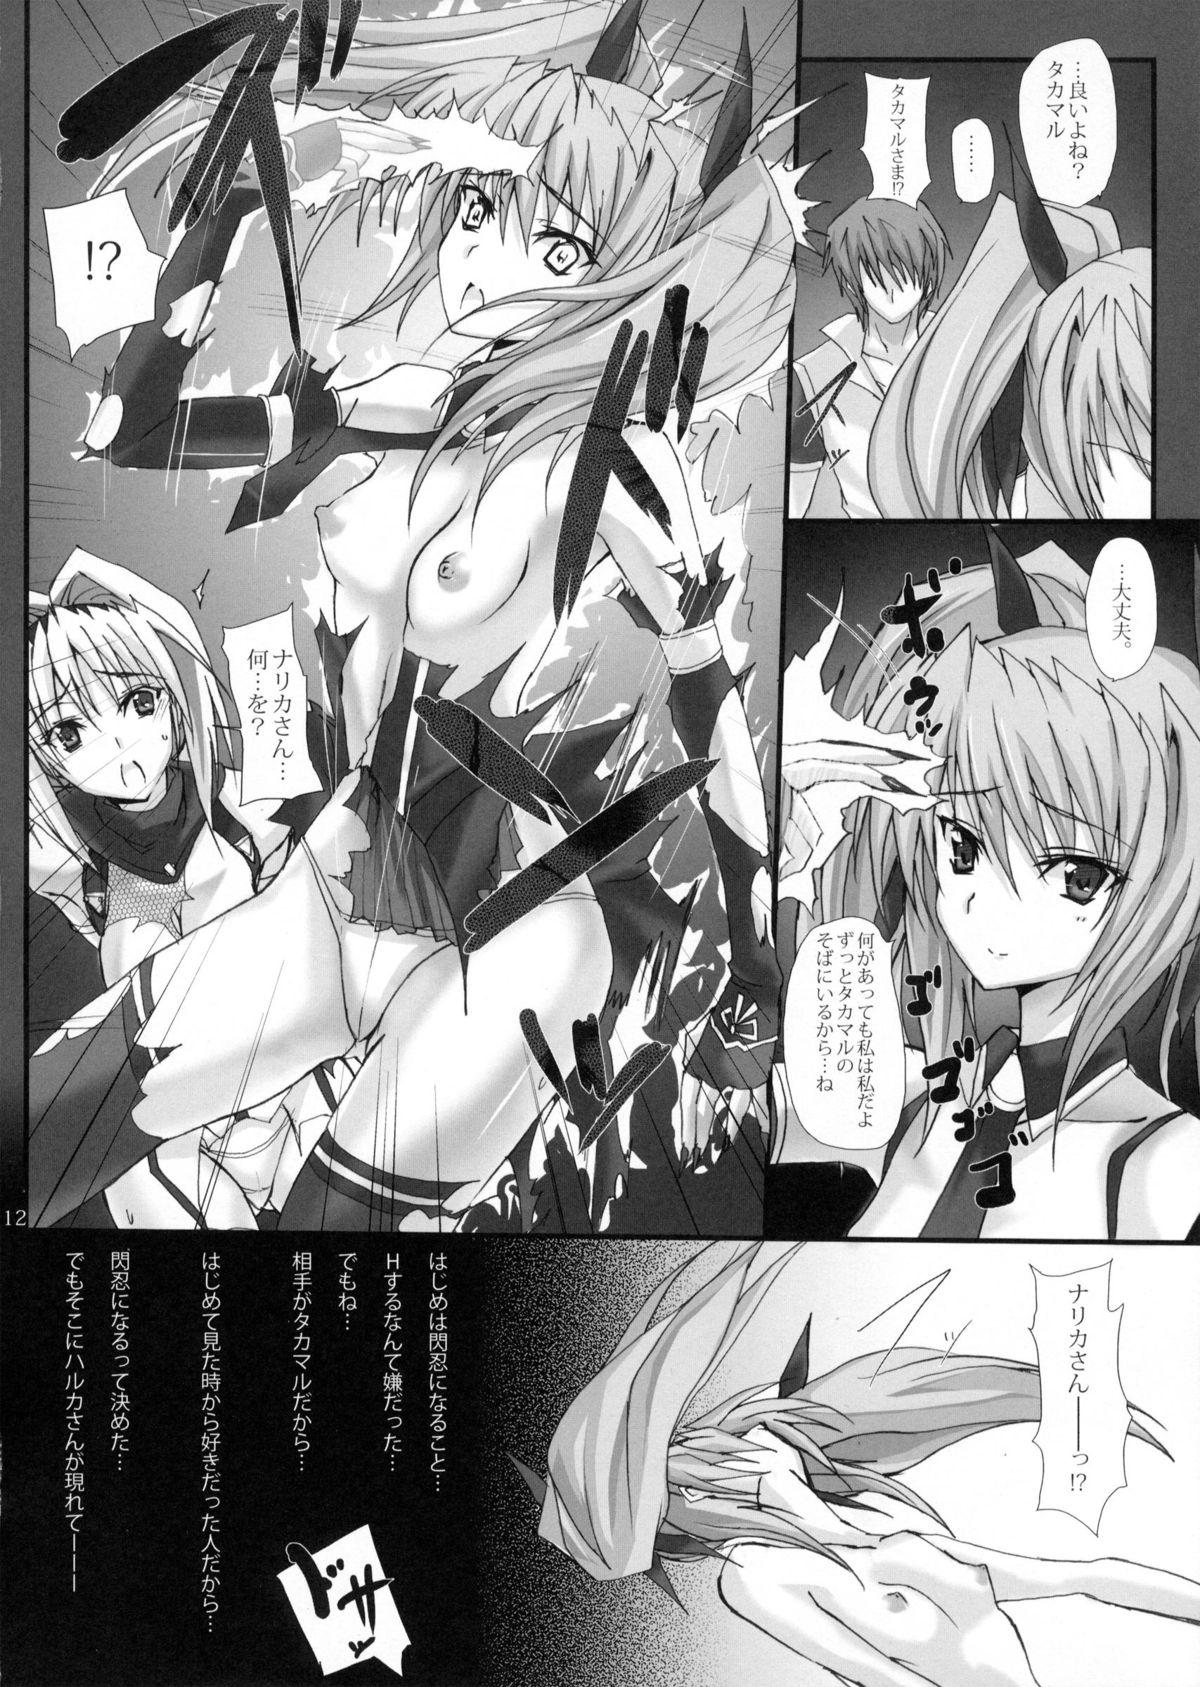 Climax Yami wo Matoishi Homura wa Ono ga Mi wo Boukyaku no Gokuen e - Beat blades haruka Women Fucking - Page 11